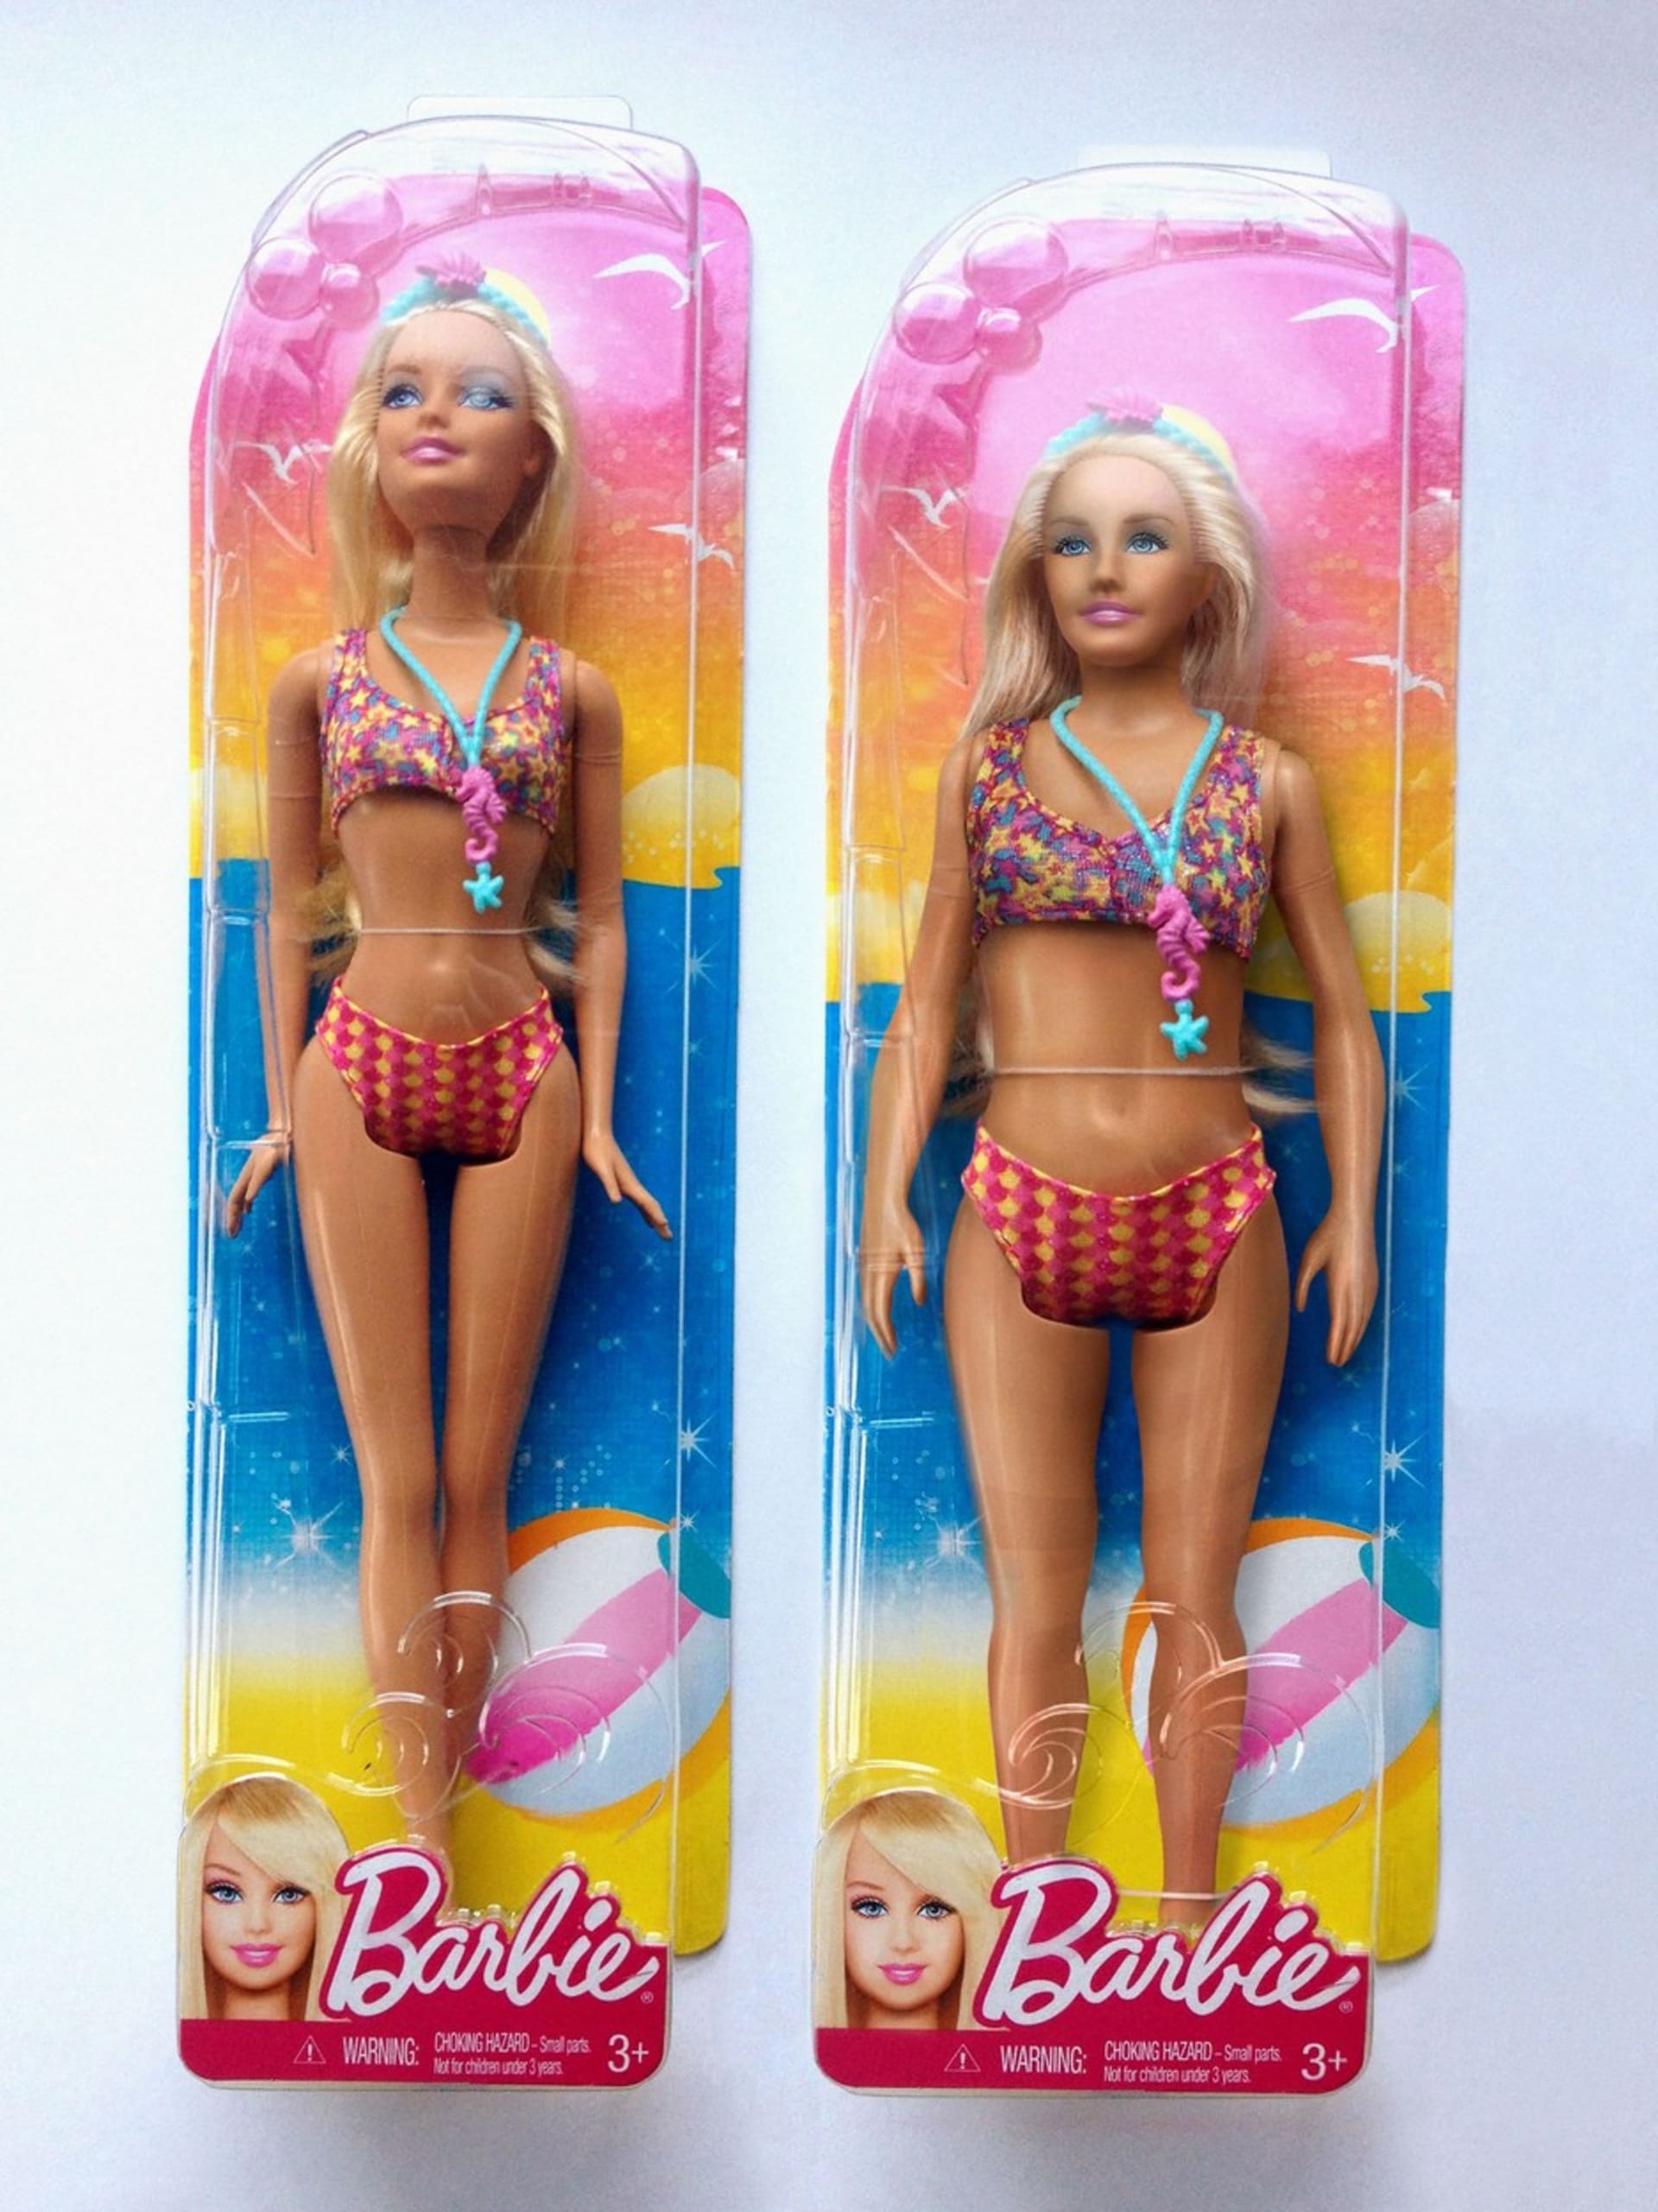 Ikonická Barbie je vzorem mnoha děvčátek.